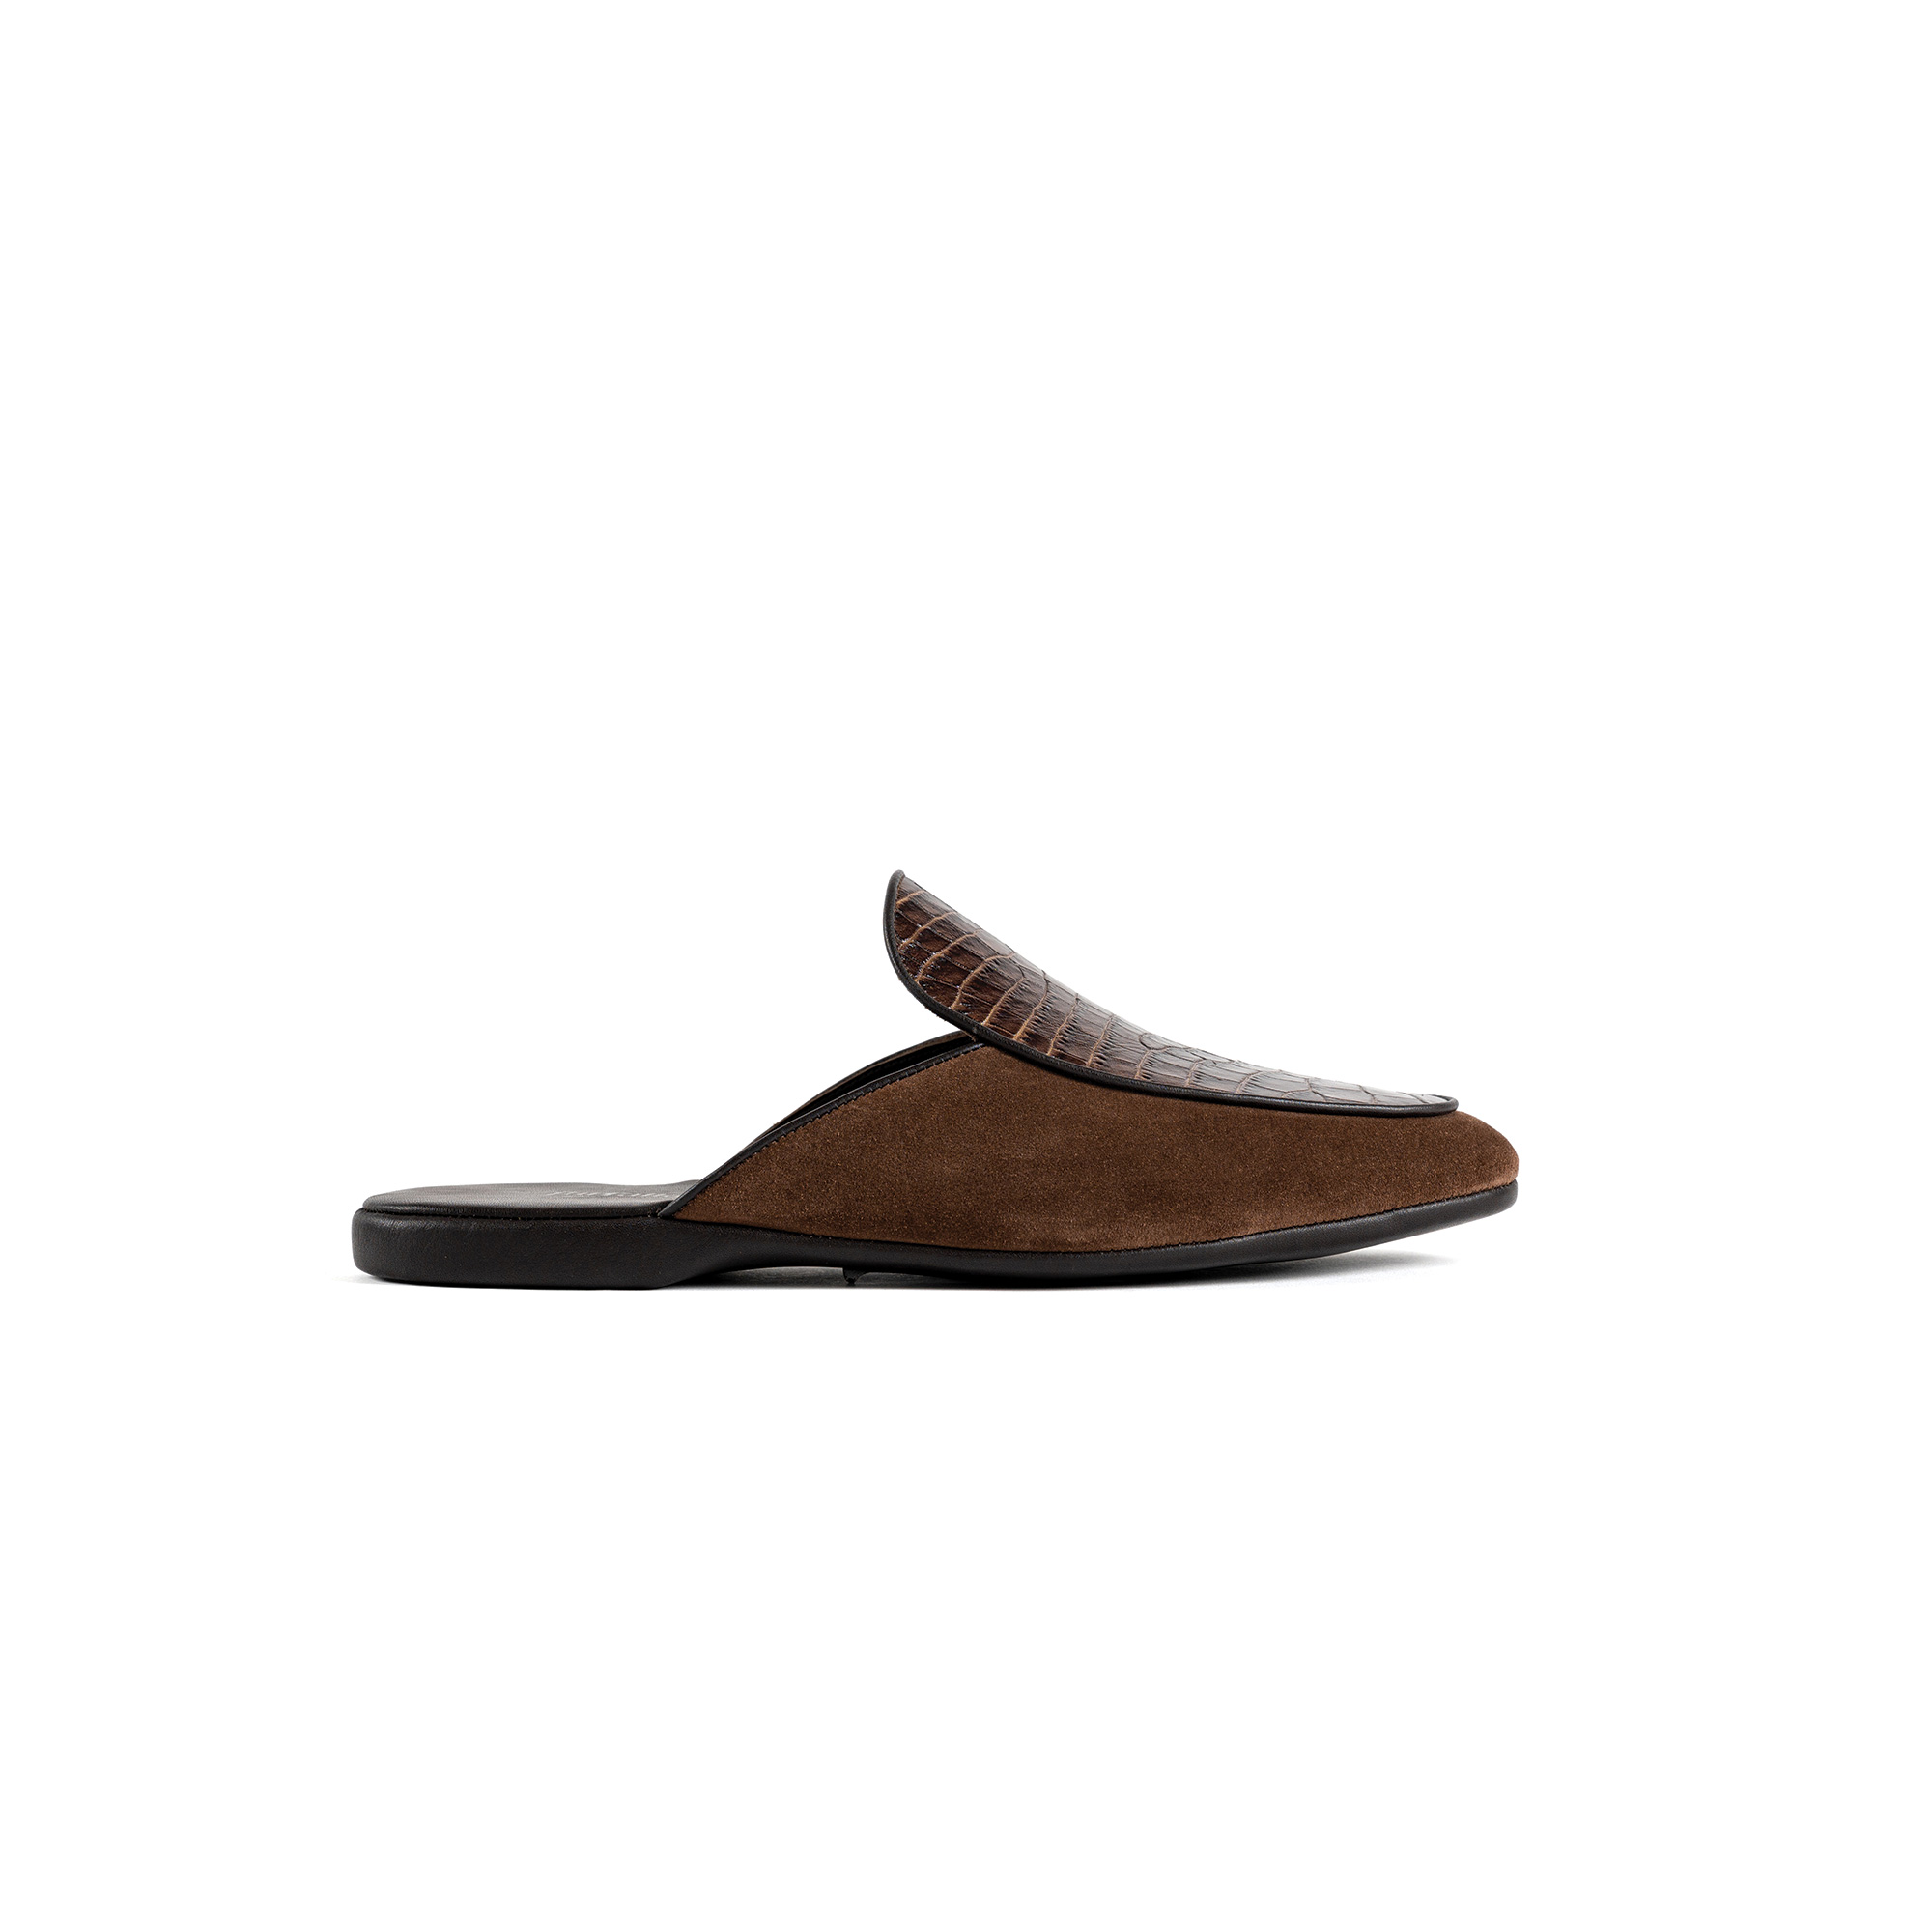 Pantofola interno lusso in velour testa di moro - Farfalla italian slippers